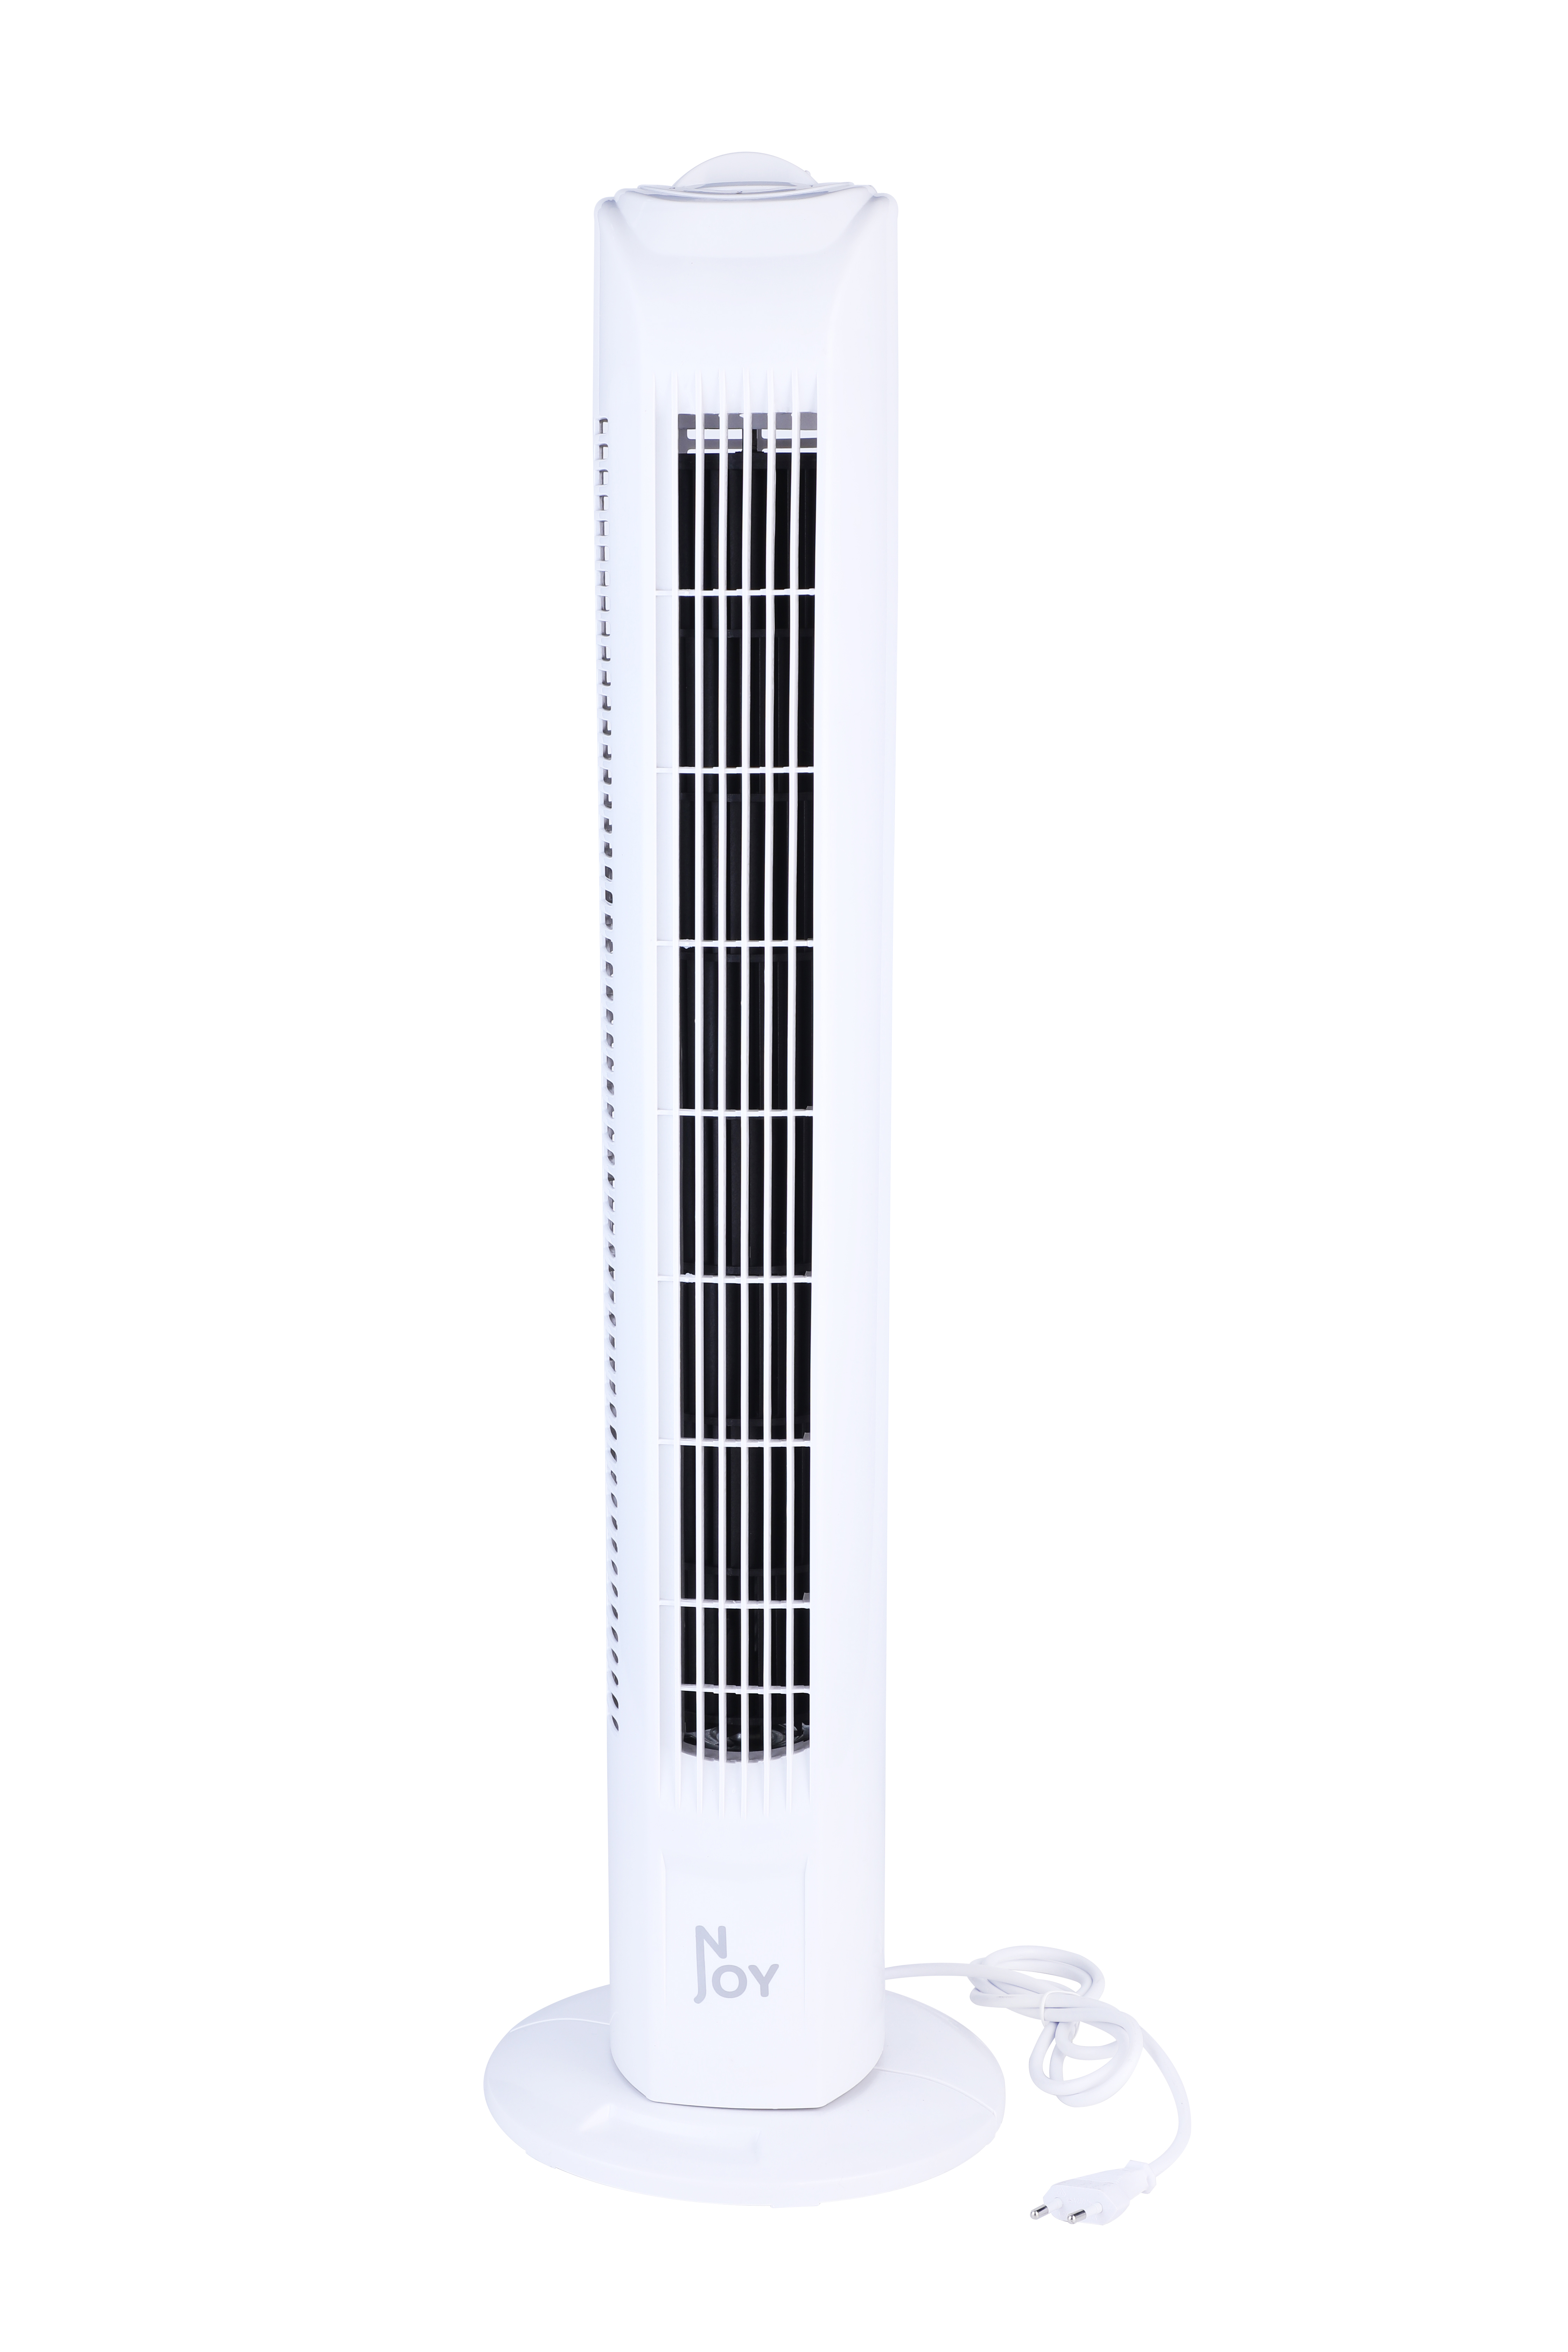 - Superkuehlung - - Geschwindigkeiten Weiss - Turm Weiß - - Ventilator - NJOY Turm Turmventilator Sicher 3 50W